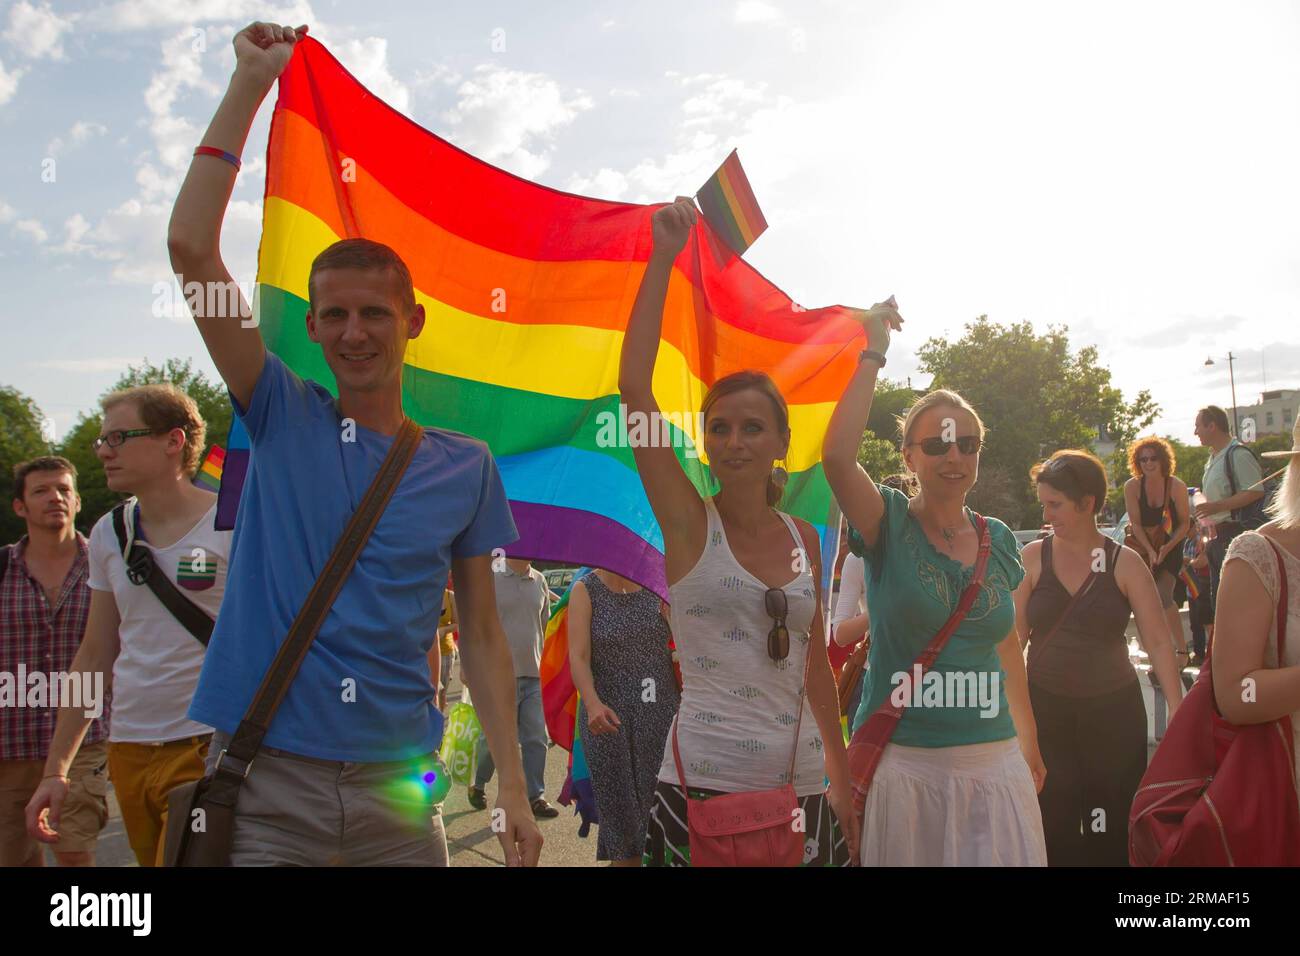 (140706) -- BUDAPEST, 5 juillet 2014 (Xinhua) -- les participants à la marche de la gay Pride à travers la ville de Budapest, Hongrie, le 5 juillet 2014. Le thème de la parade était Budapest Pride : 365 , ce qui signifie que les participants s'efforçaient d'être acceptés tout au long de l'année, et pas seulement ce jour-là. Divers groupes prétendant représenter les valeurs familiales ont organisé des contre-manifestations le long du parcours du défilé. La police a arrêté deux manifestants.(Xinhua/Attila Volgyi)(ctt) HONGRIE-BUDAPEST-GAY PRIDE PARADE PUBLICATIONxNOTxINxCHN Budapest juillet 5 2014 XINHUA participants à la gay Pride parade défilent à travers la ville Banque D'Images